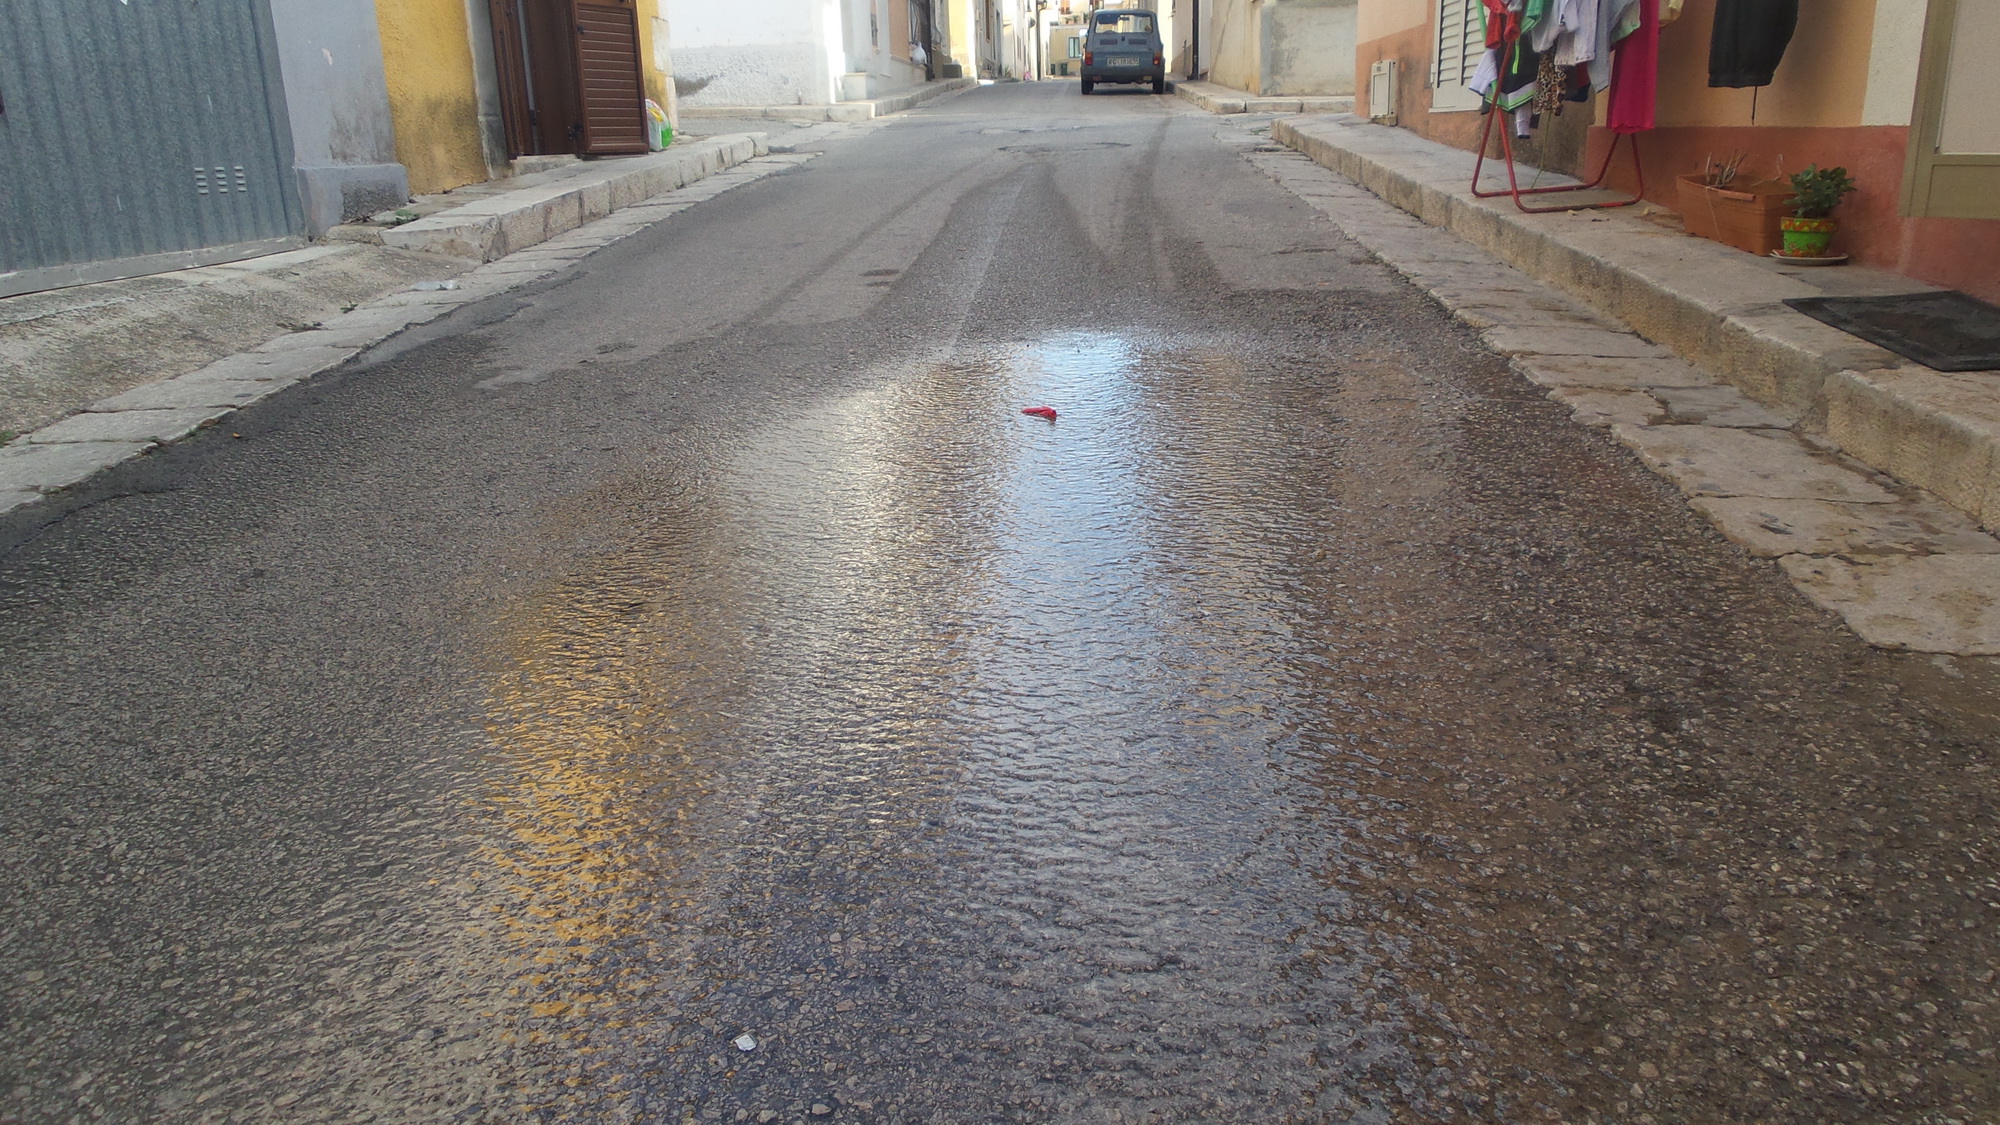  Copiosa perdita d’acqua in via Ariosto: “Finora nessun intervento”